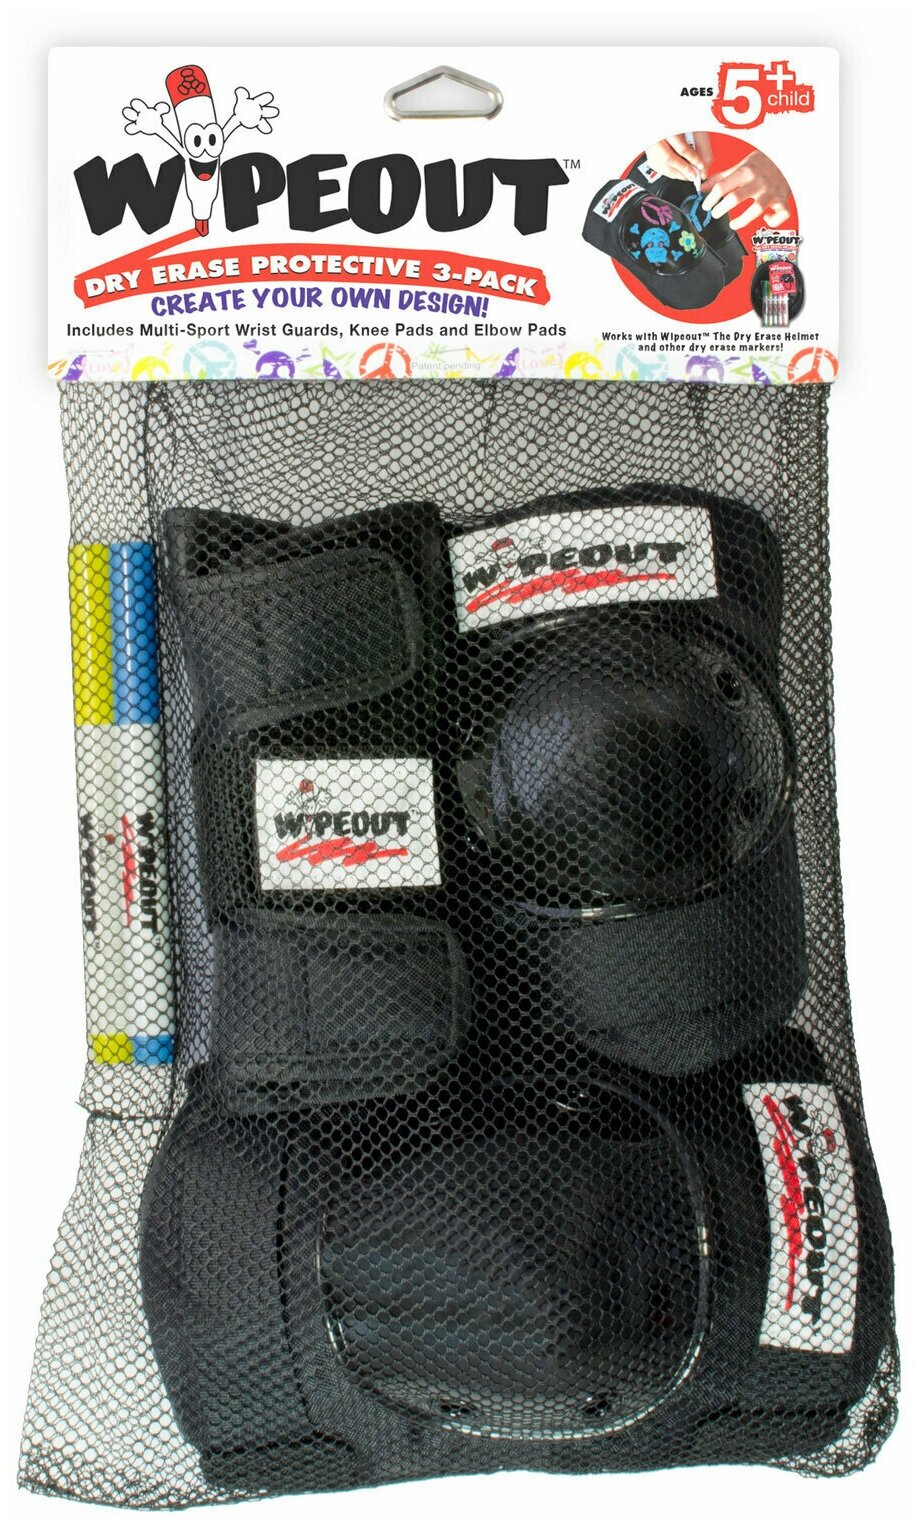 Комплект защиты Wipeout Black (M 5+) - чёрный